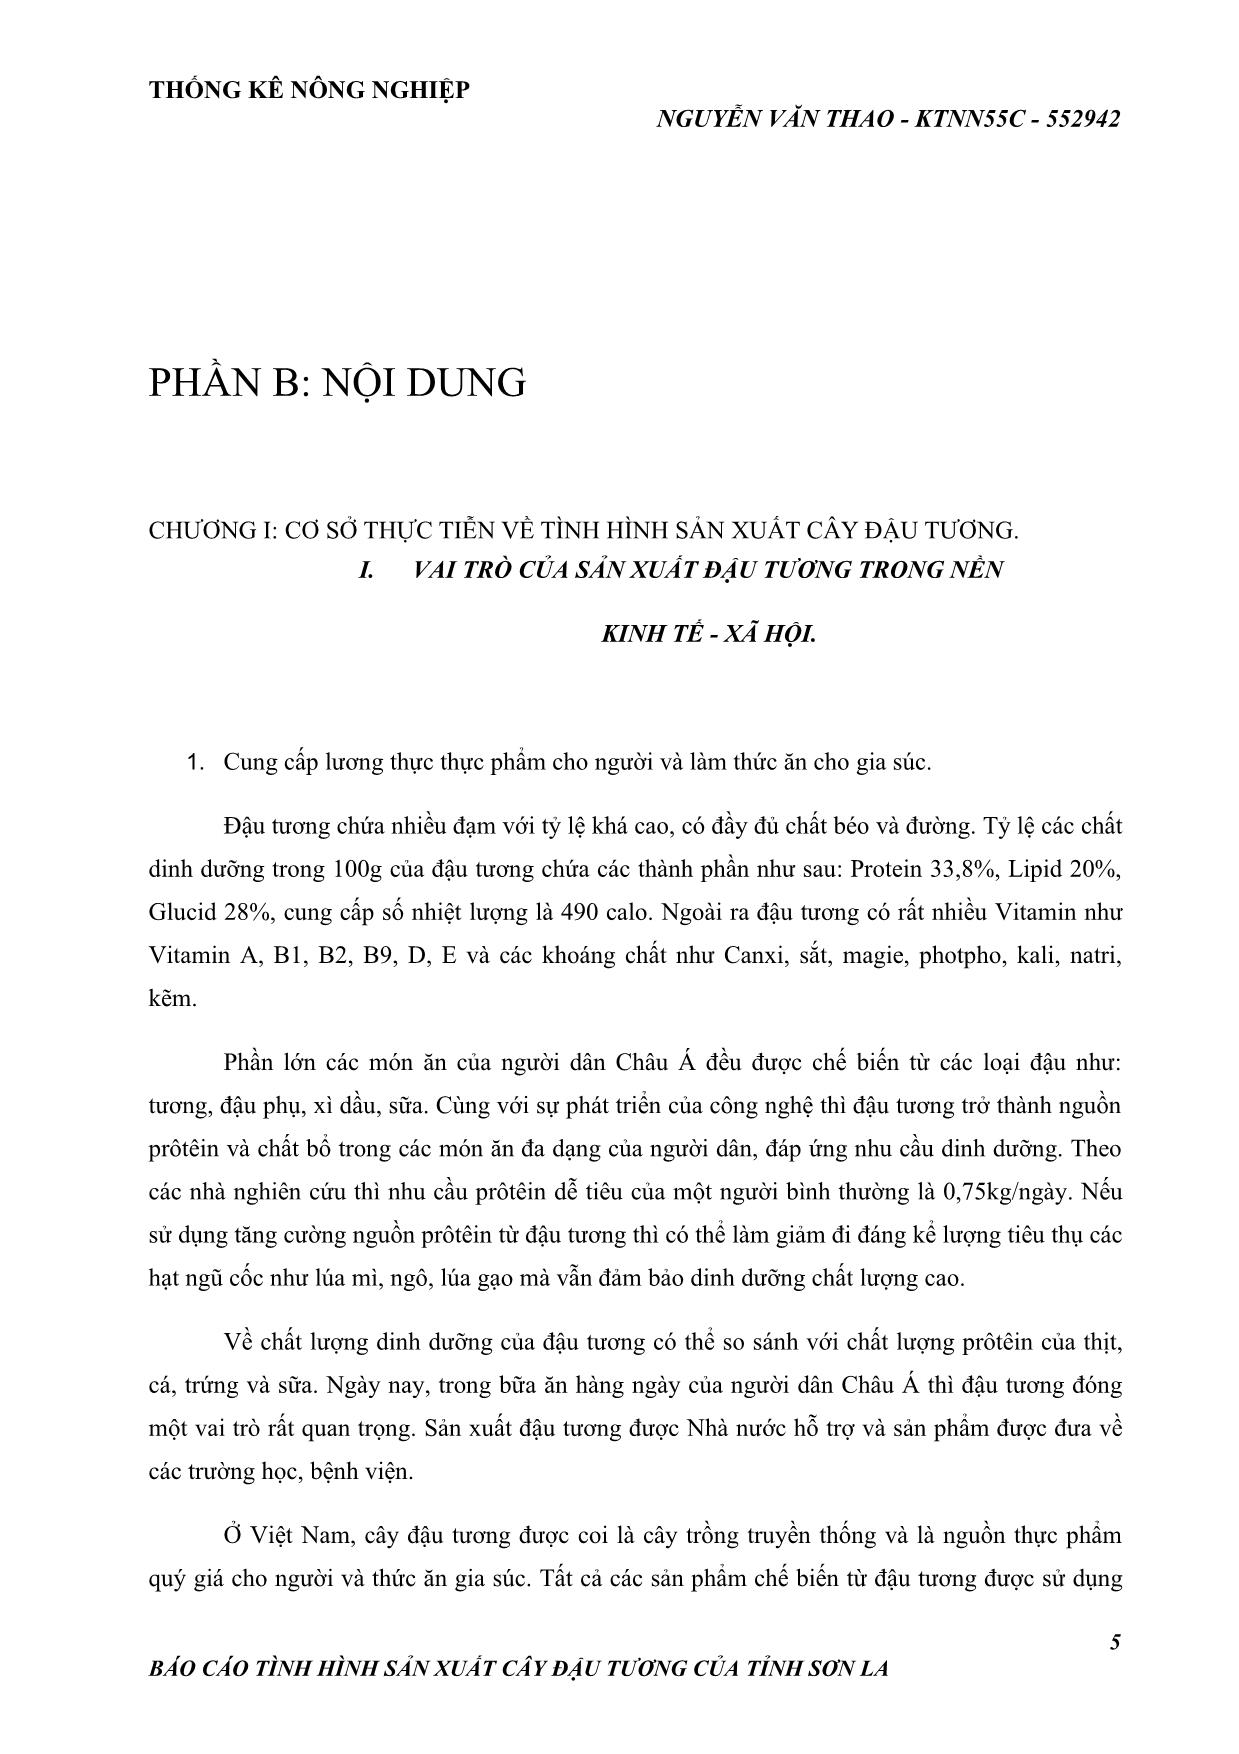 Đề tài Tình hình sản xuất cây đậu tương ở tỉnh Sơn La trang 5